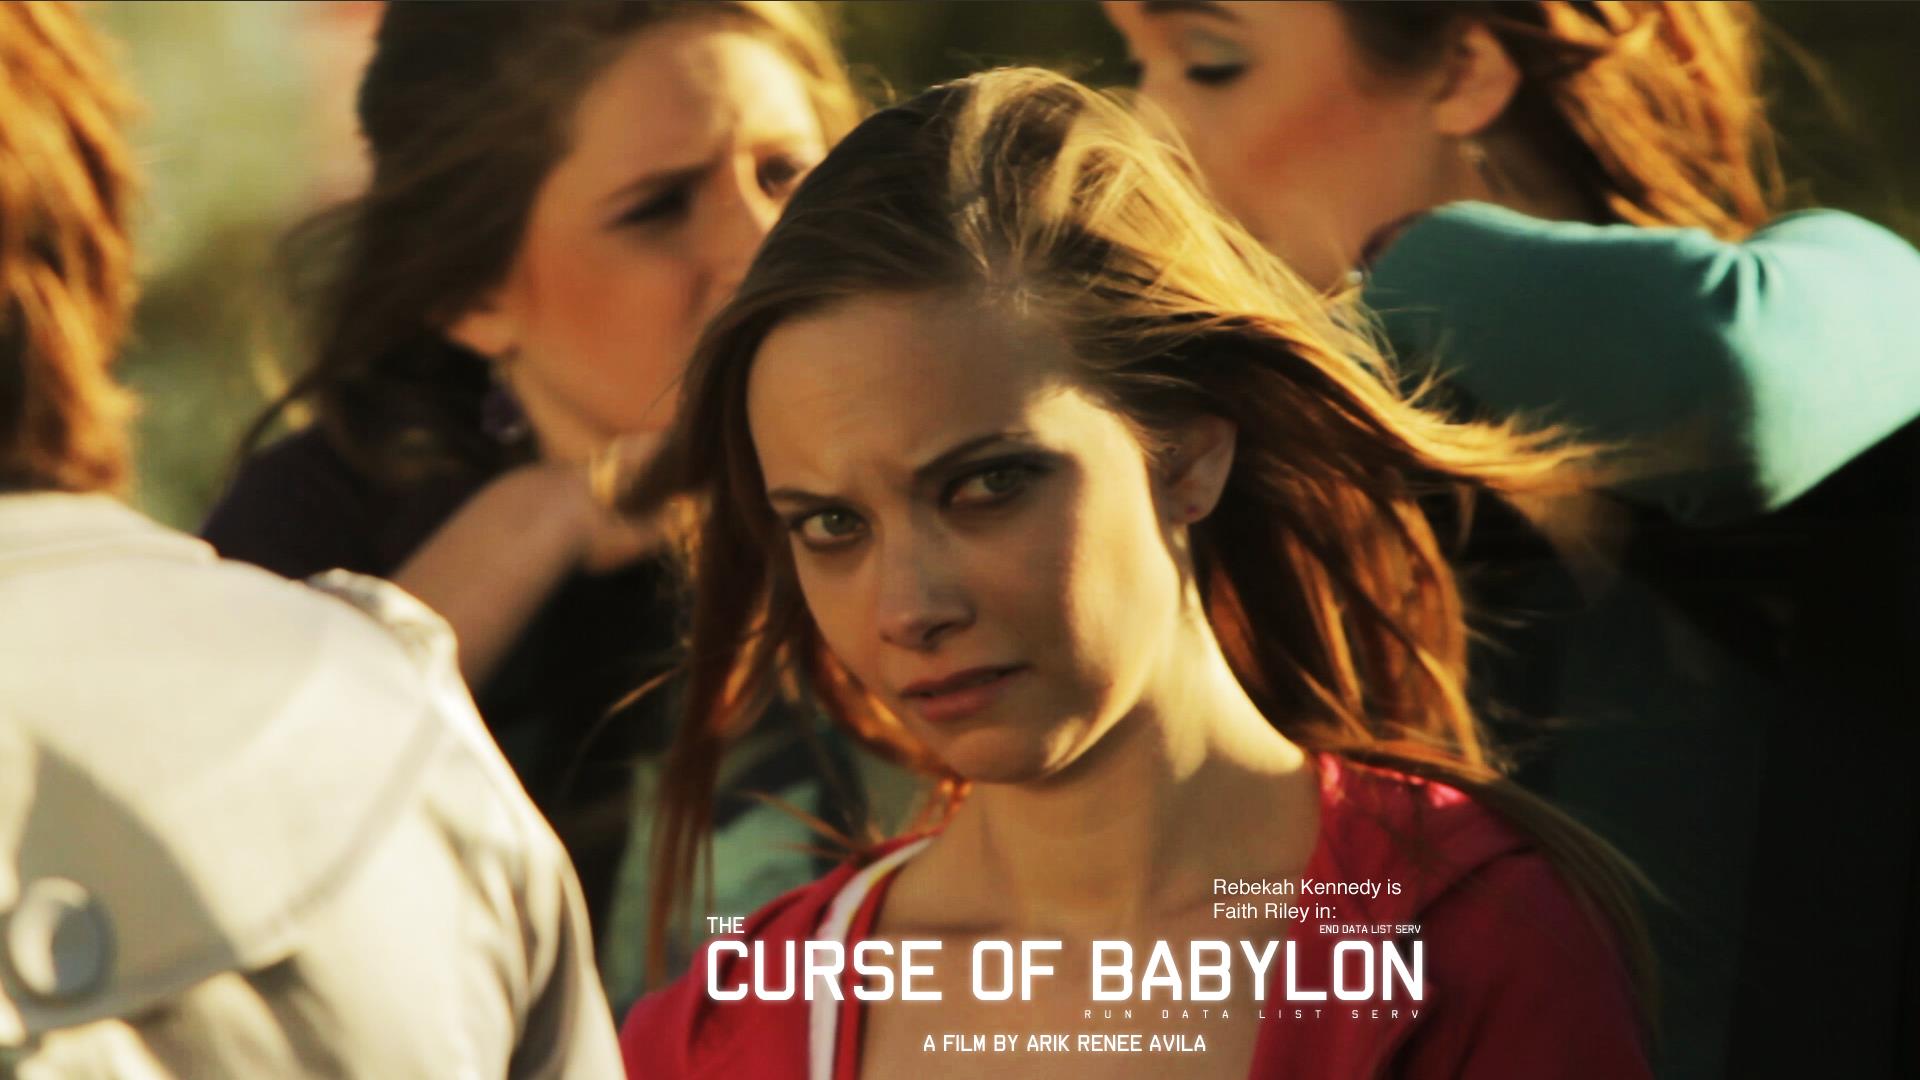 Rebekah as Faith Riley in The Curse of Babylon